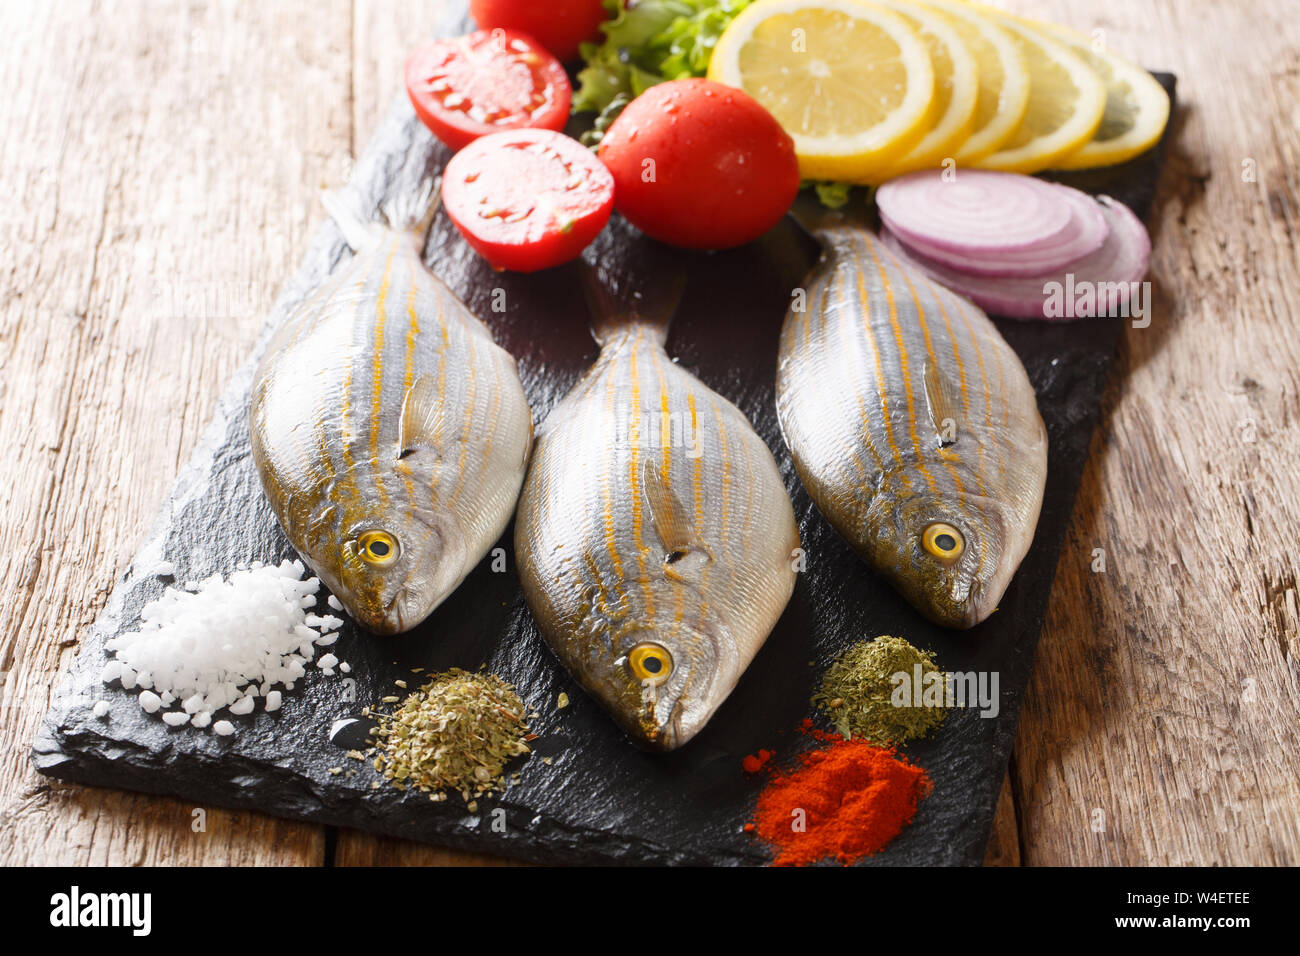 Raw Salema porgy oder Sarpa salpa mit frischem Gemüse und Gewürze close-up auf einer Schiefertafel Board auf dem Tisch. Horizontale Stockfoto